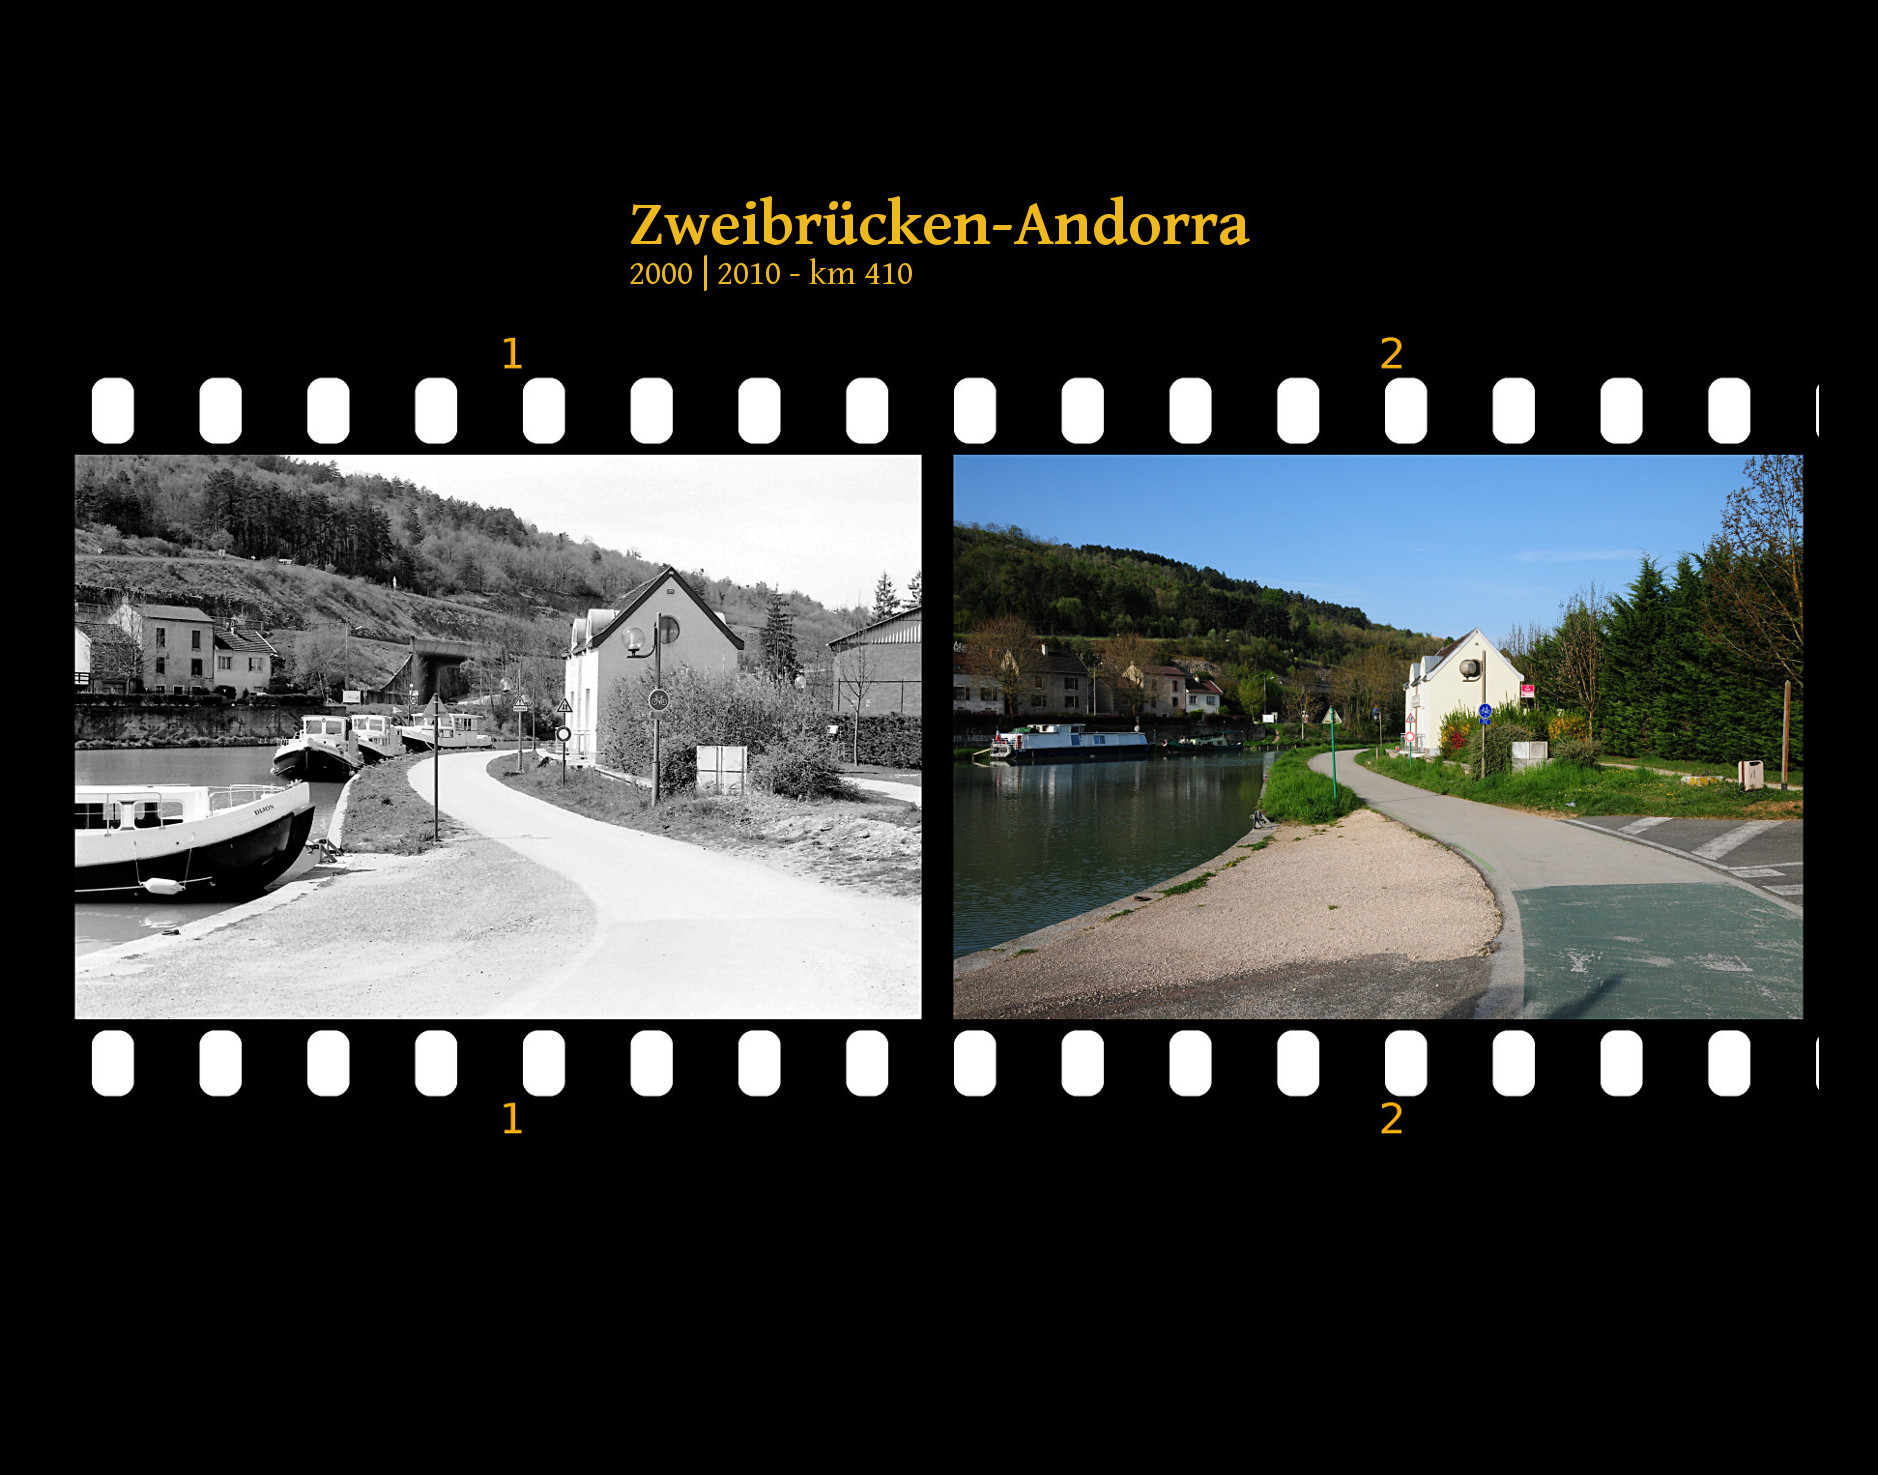 Am Treidelpfad eines französischen Kanals. Ein kleiner Kanalhafen und rechts ein paar Häuser. Links der Kanal, neben dem eine Landstraße vor Berghängen entlangführt. Zwei Bilder auf Fimstreifen mit schwarzem Hintergrund montiert. Links die schwarz-weiß-Version, rechts bunt zehn Jahre später aufgenommen. Titel Zweibrücken-Andorra 2000-2010 km 410.